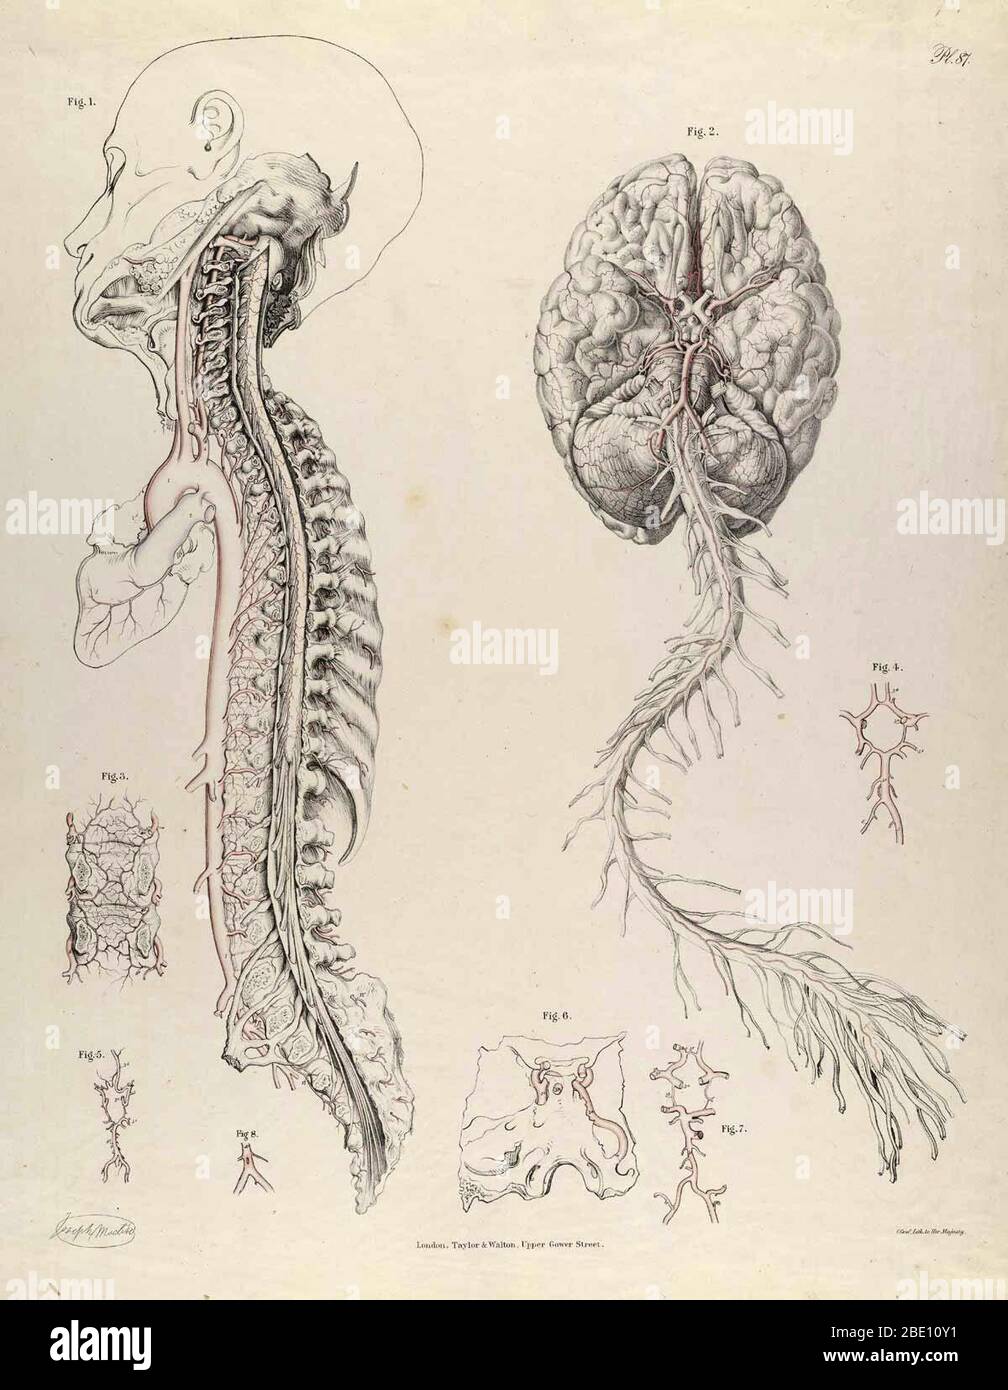 Ilustración de la Anatomía de las arterias del cuerpo humano con sus aplicaciones a la patología y cirugía operatoria. Por Richard Quain, Publicado en 1844. Foto de stock